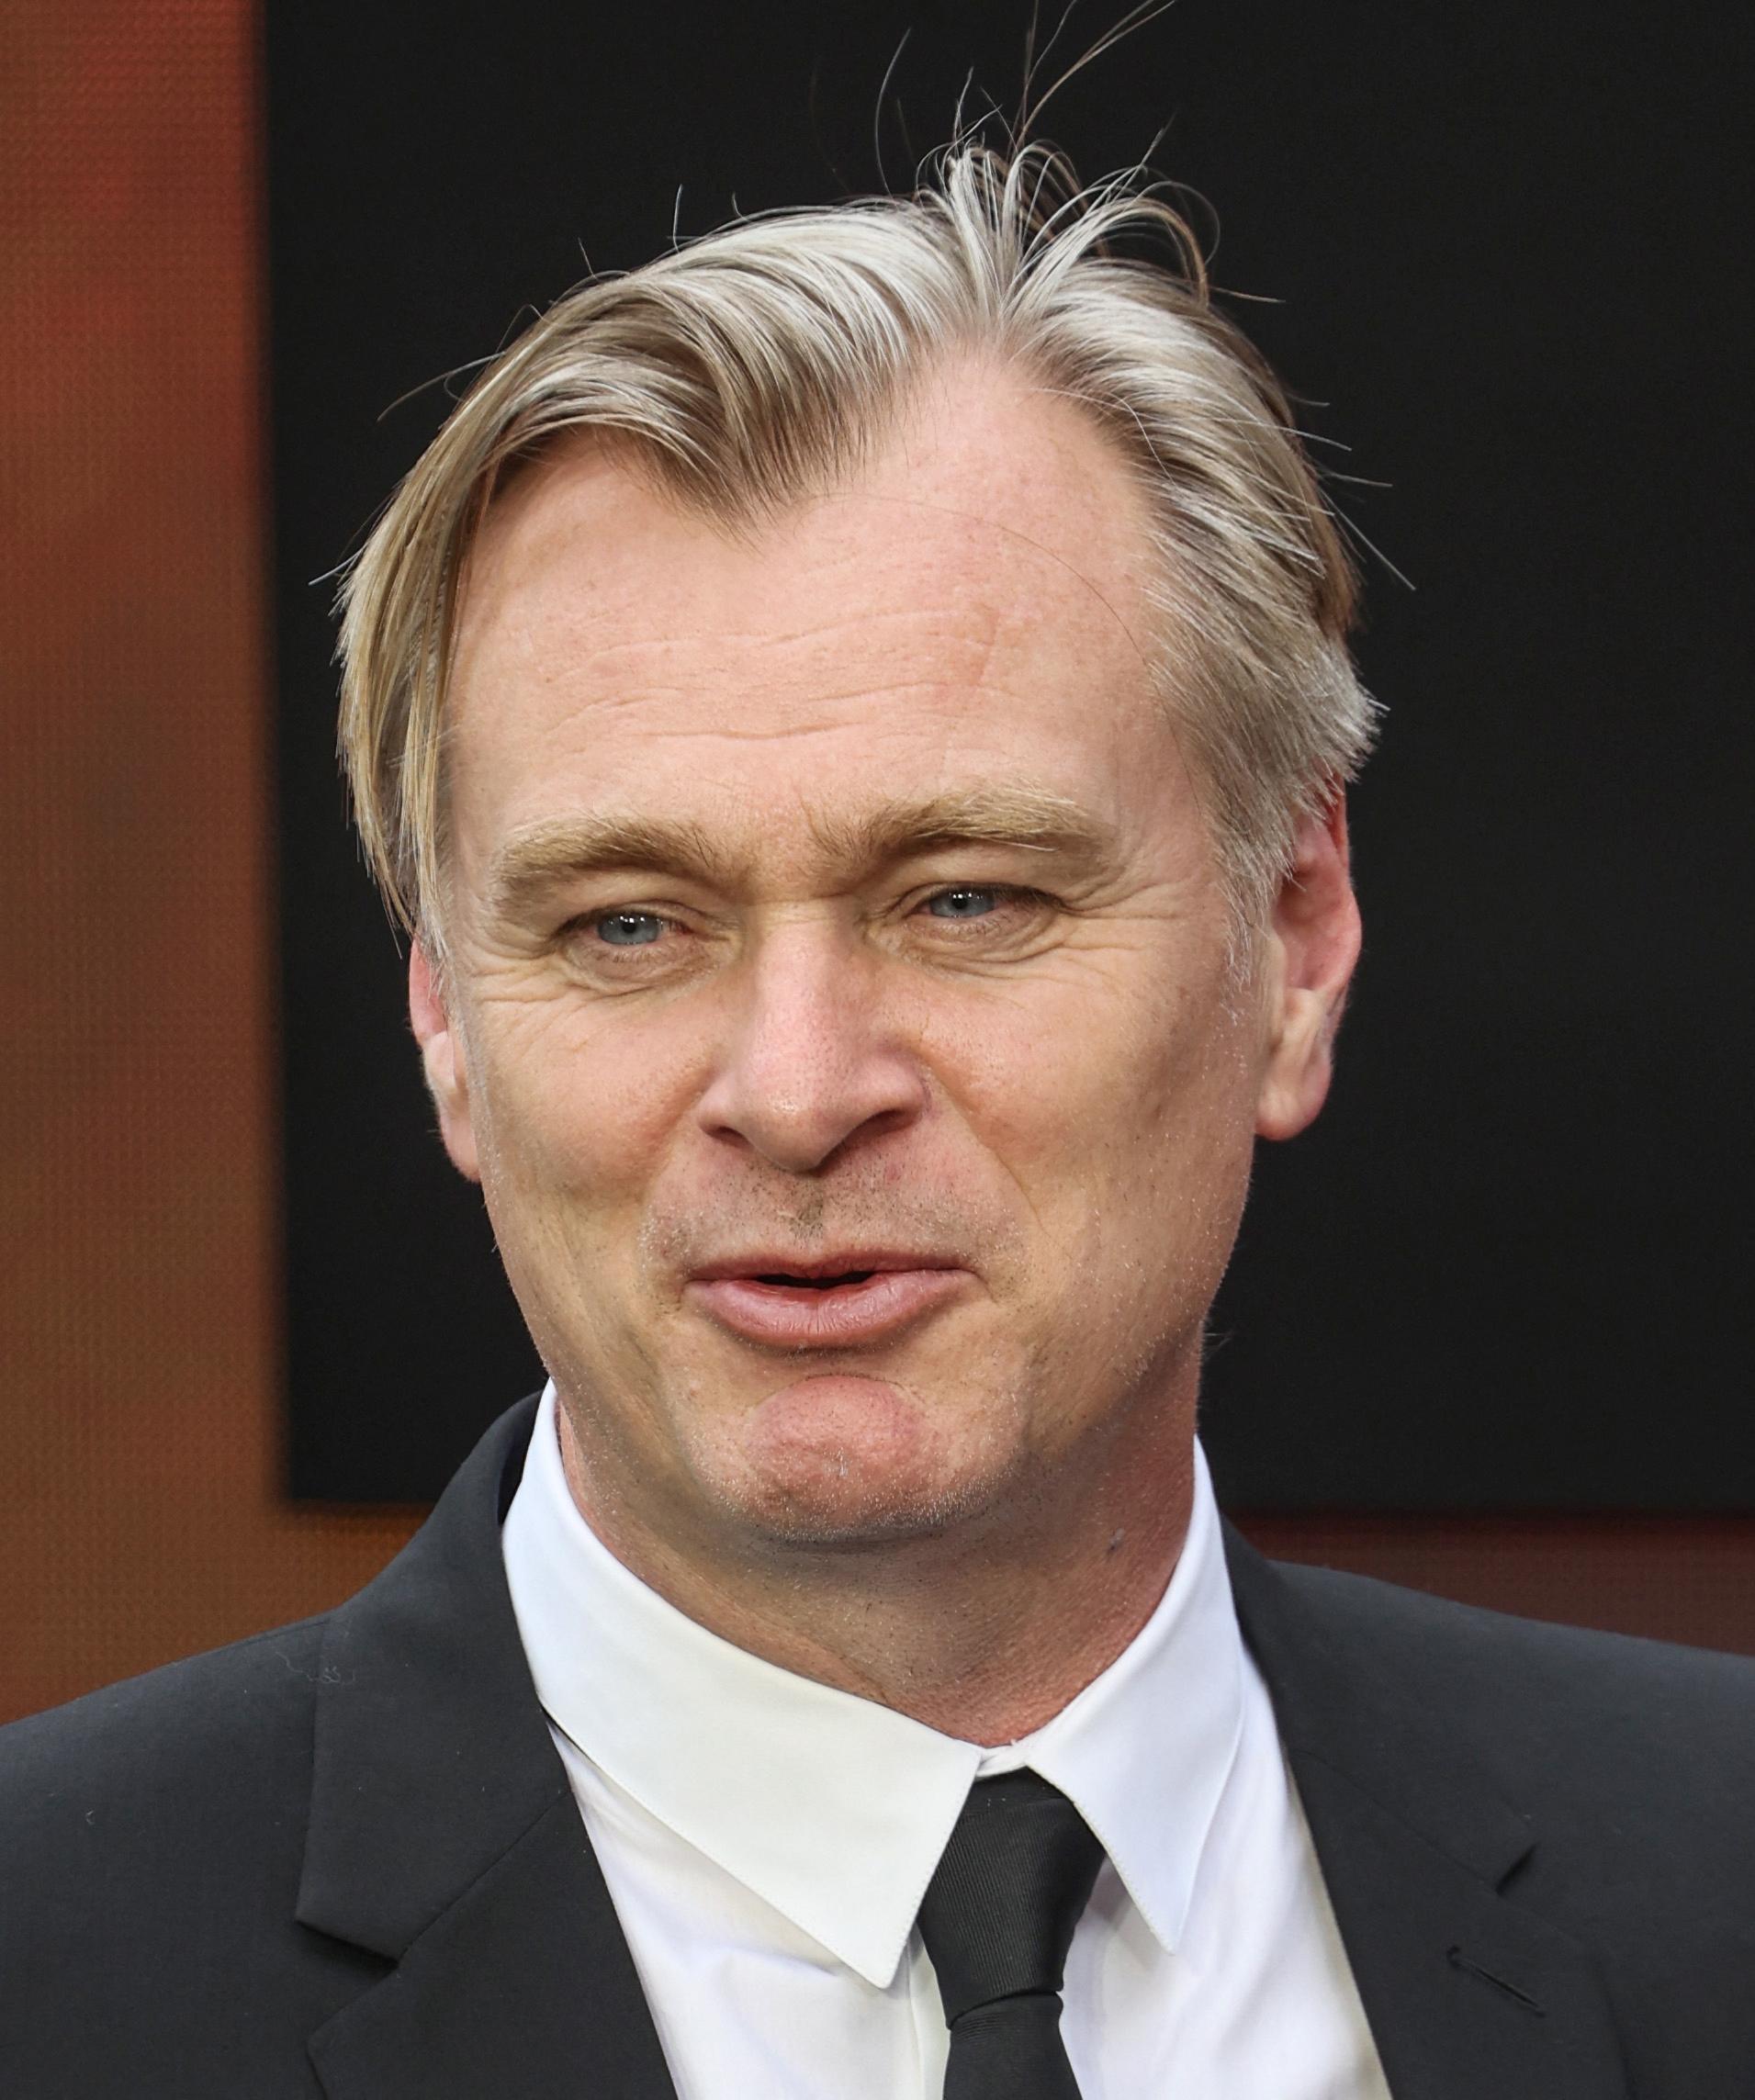 Christopher Nolan revela que não voltaria a dirigir um filme de super-heróis depois da trilogia ‘Cavaleiro das Trevas’